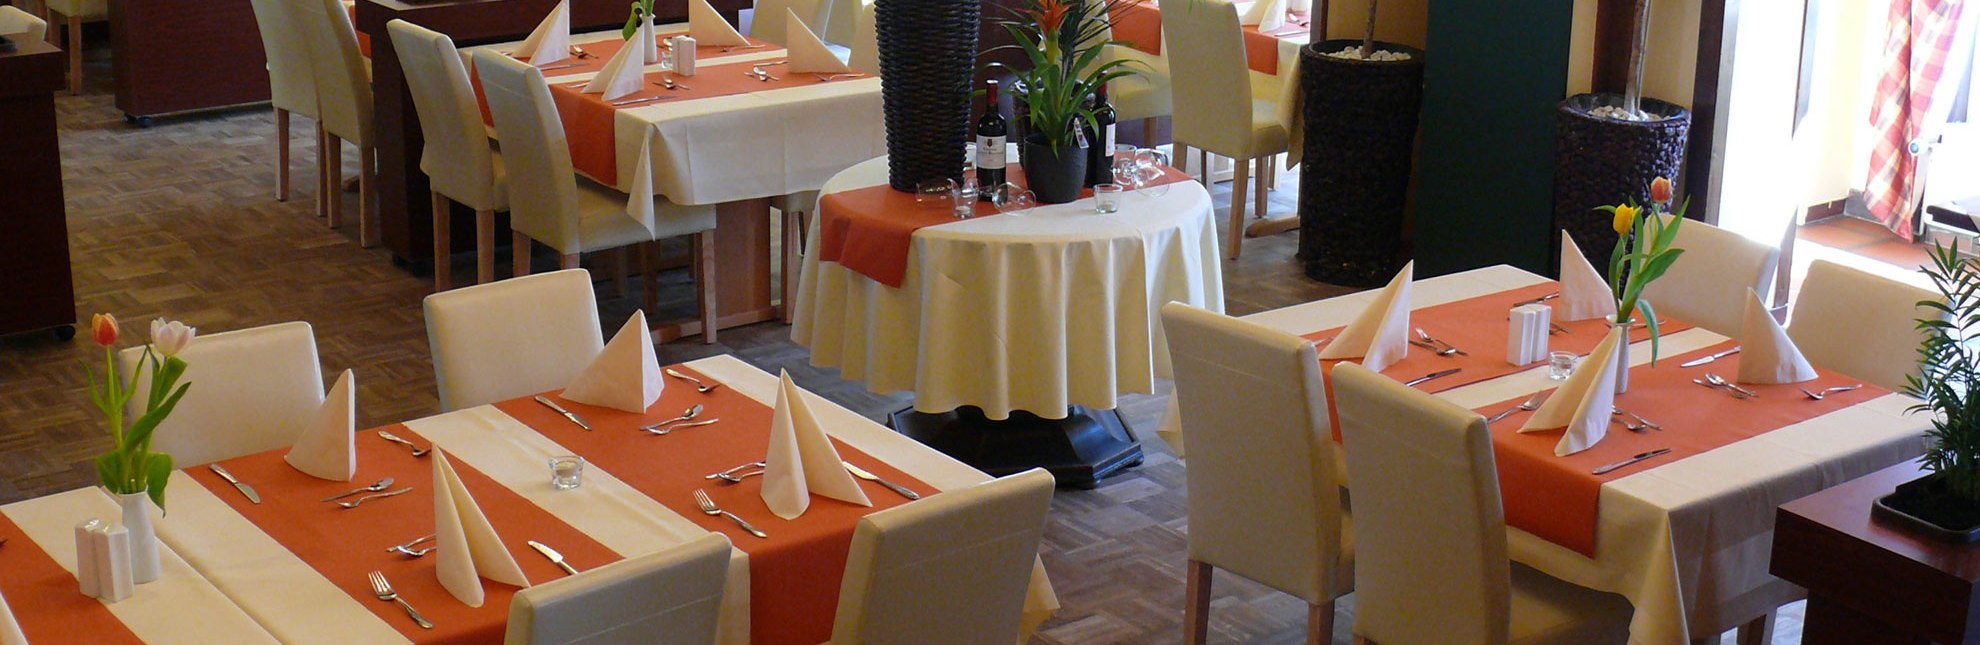 Gedeckter Tisch im Gasthaus Düneberg in Geesthacht, © Gasthaus Düneberg, Geesthacht